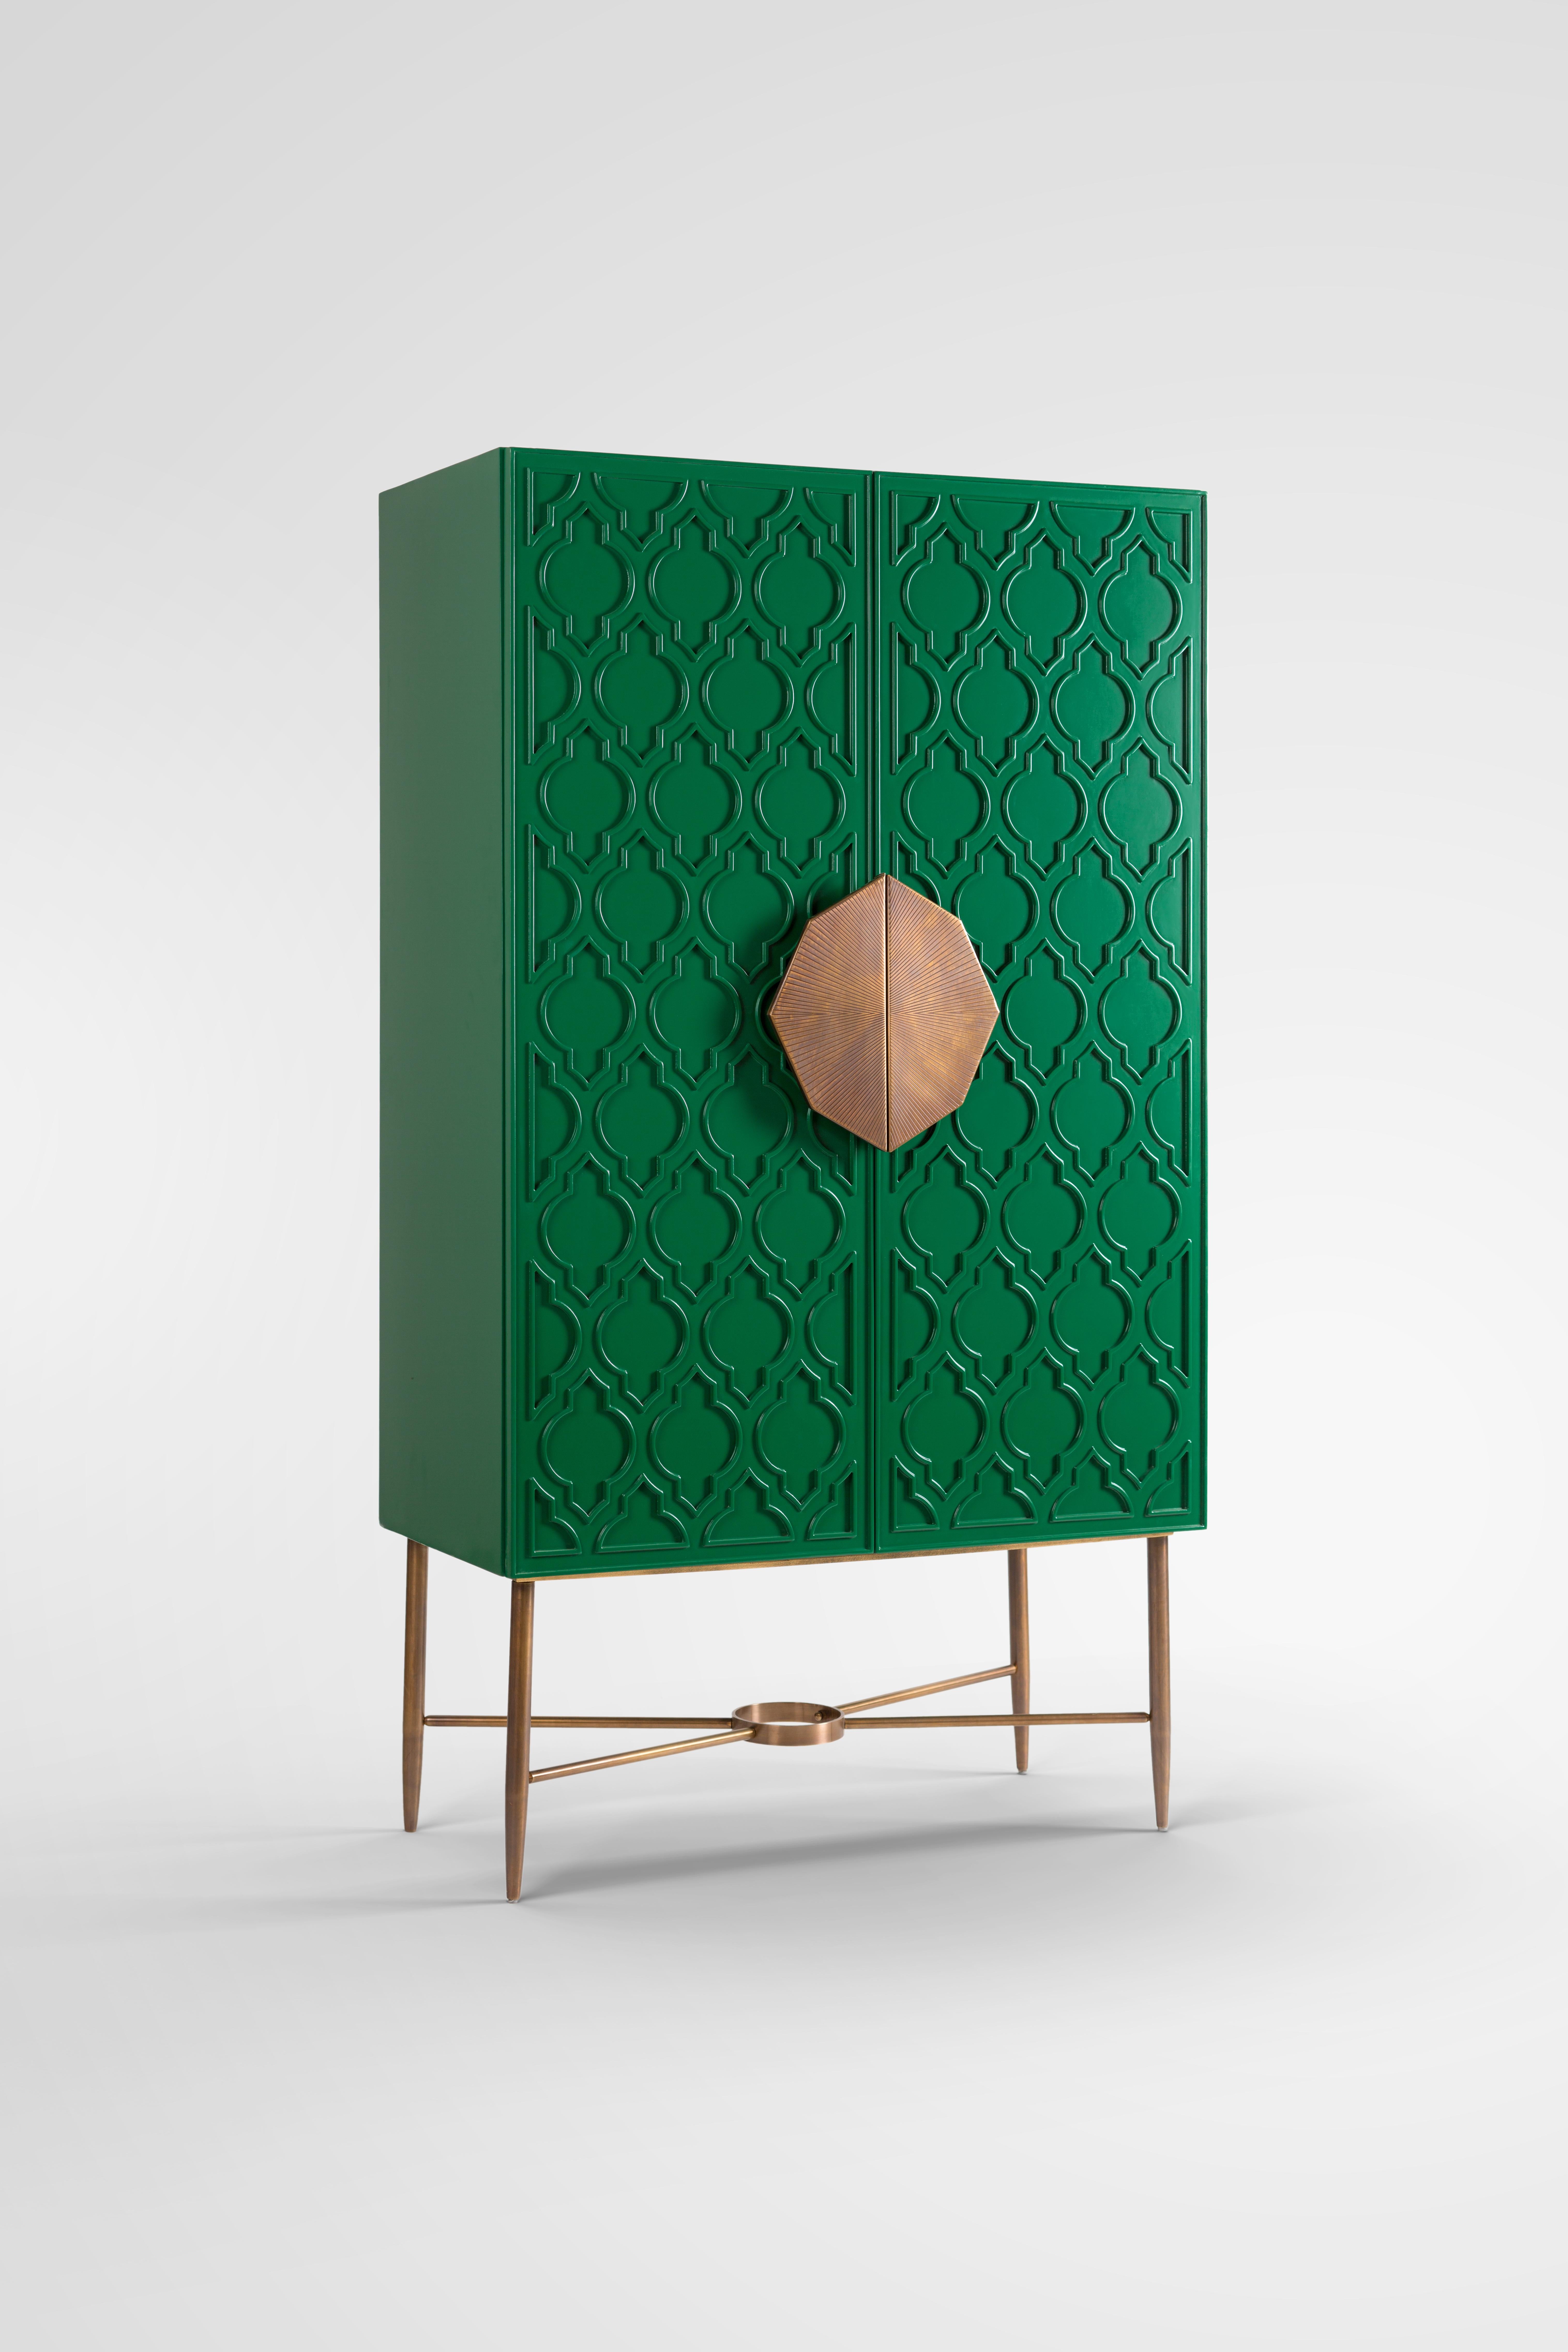 Cabinet laqué vert avec motif islamique et poignée en laiton fabriquée à la main. 
Notre meuble Art déco Andalousie s'inspire de notre riche héritage islamique. Il est conçu à partir d'un motif islamique et peint en vert royal pour une touche de